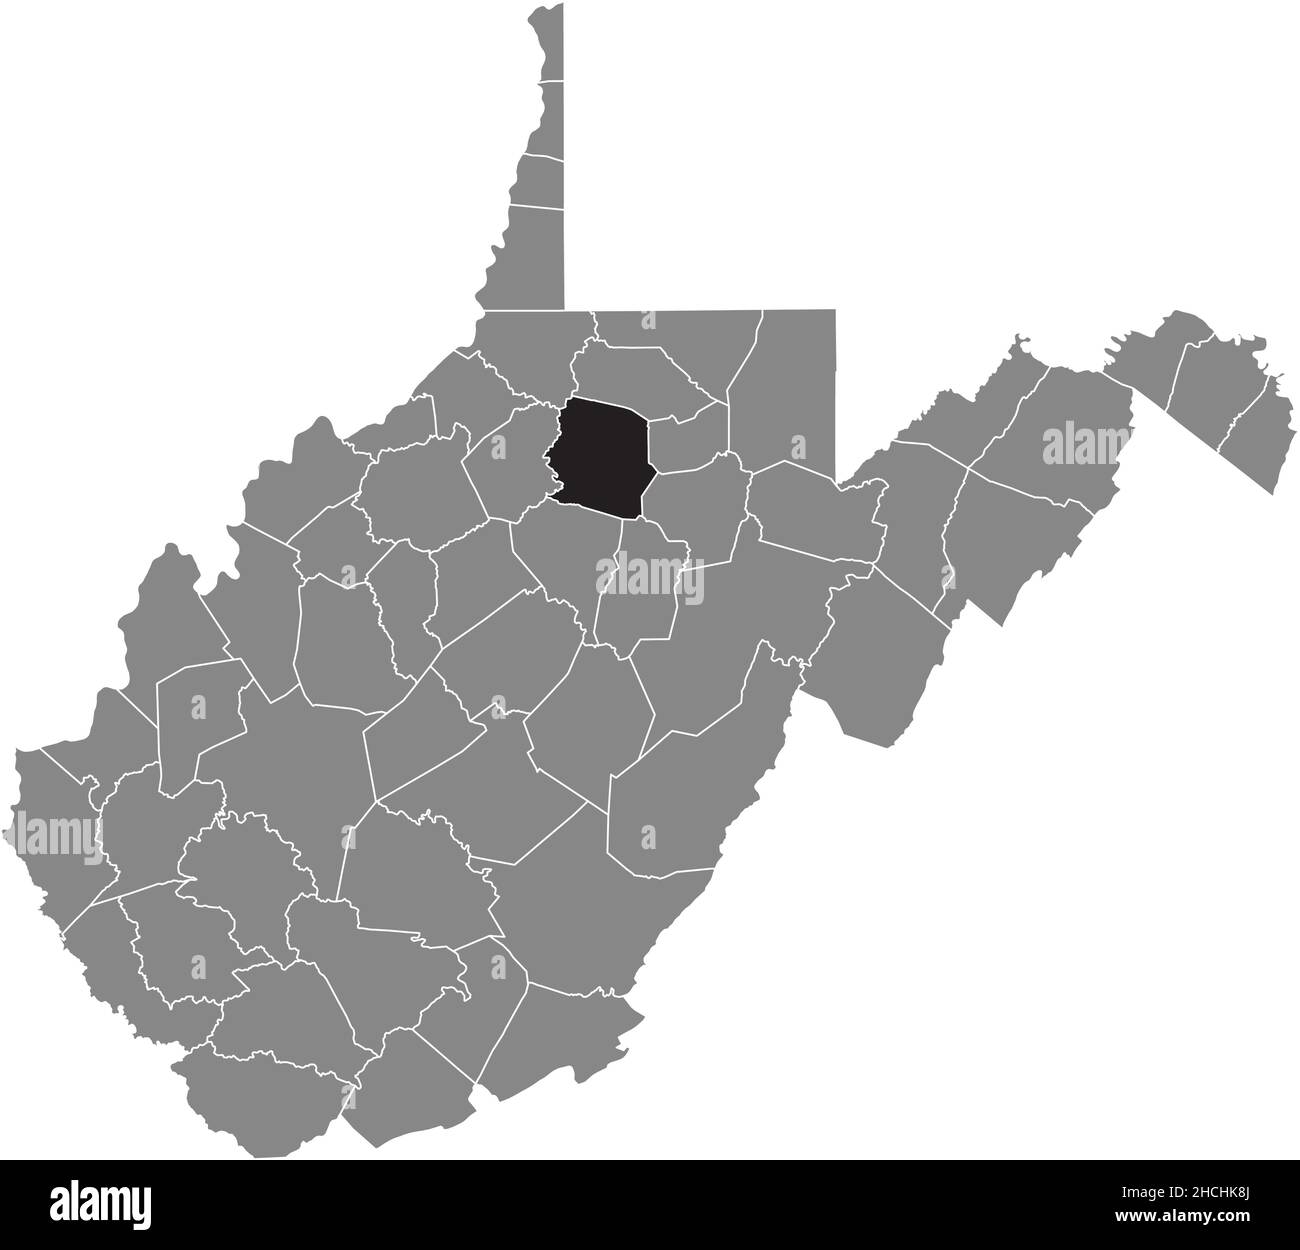 Mappa della posizione evidenziata in nero della contea di Harrison all'interno della mappa amministrativa grigia dello stato federale della Virginia occidentale, USA Illustrazione Vettoriale